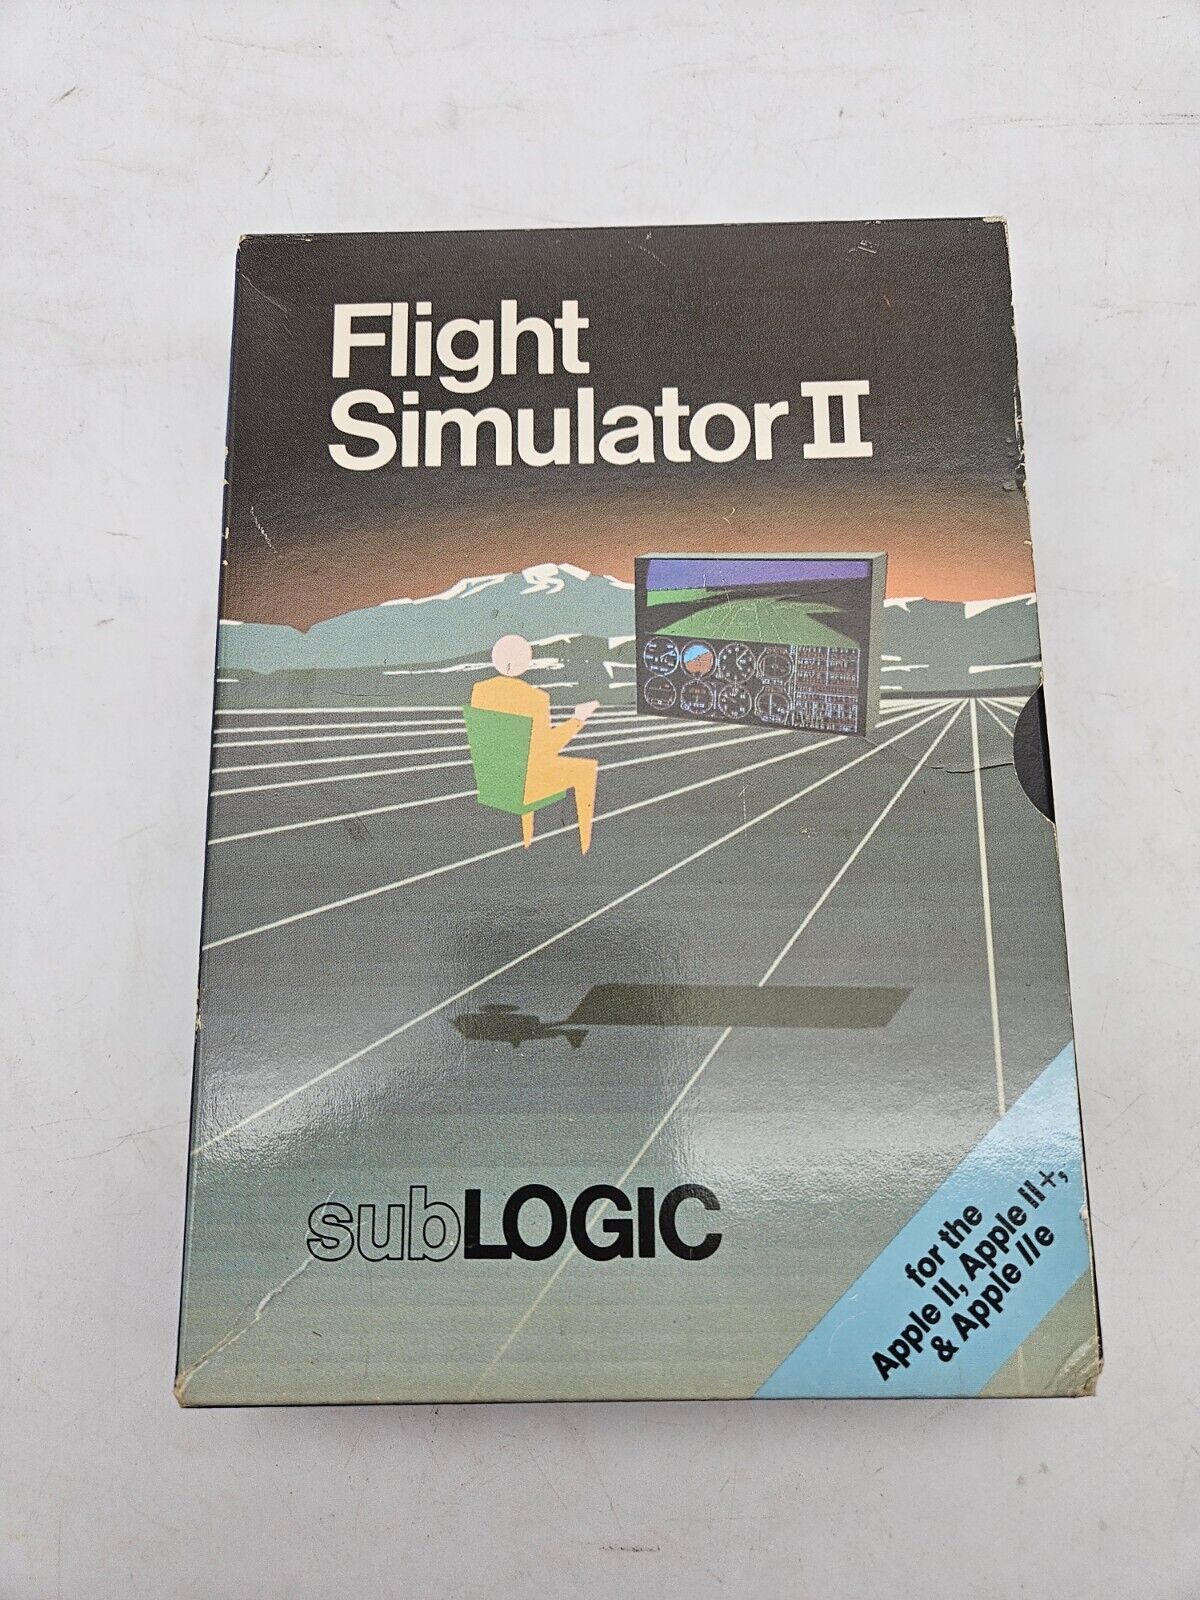 VTG Flight Simulator II A2-FS2 SubLogic for Apple II+ IIe IIc IIgs 80s Computer